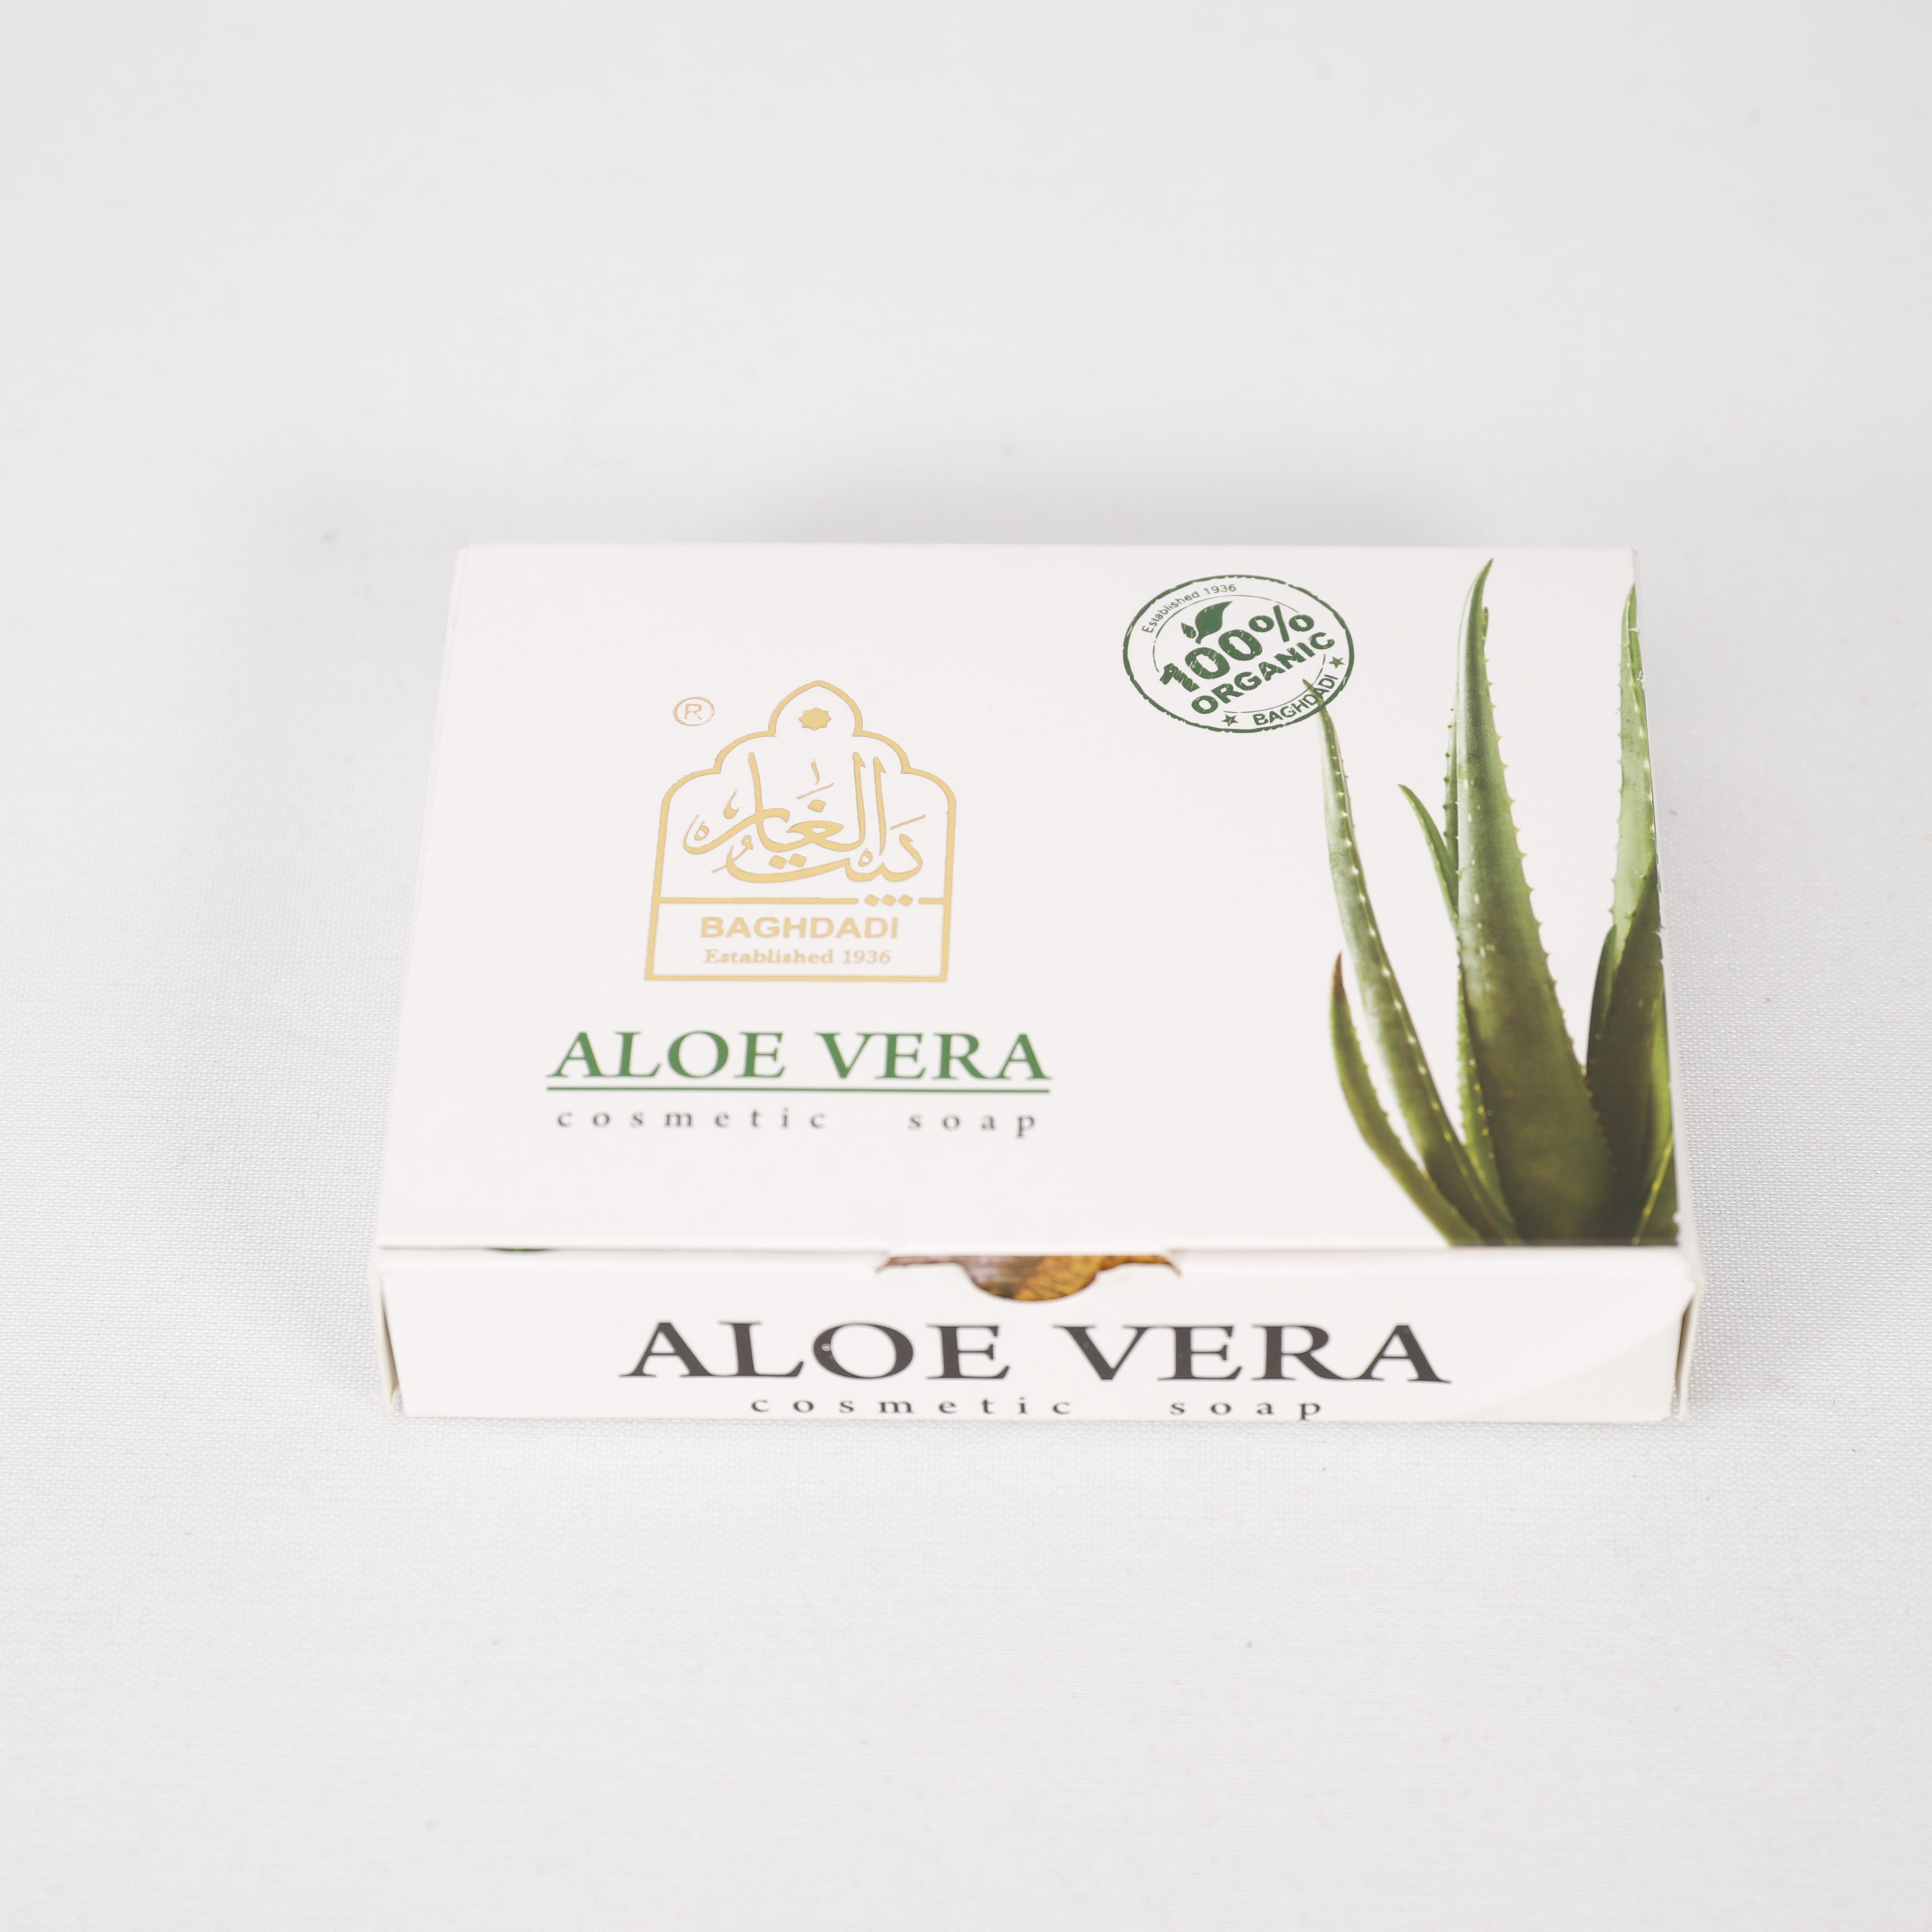 100g Aloe Vera Seife, 70% Kokosnussöl, 15% Olivenöl, 5% Öle, 7% Aloe Vera Gel Verseifung, 100% Organic, 100g